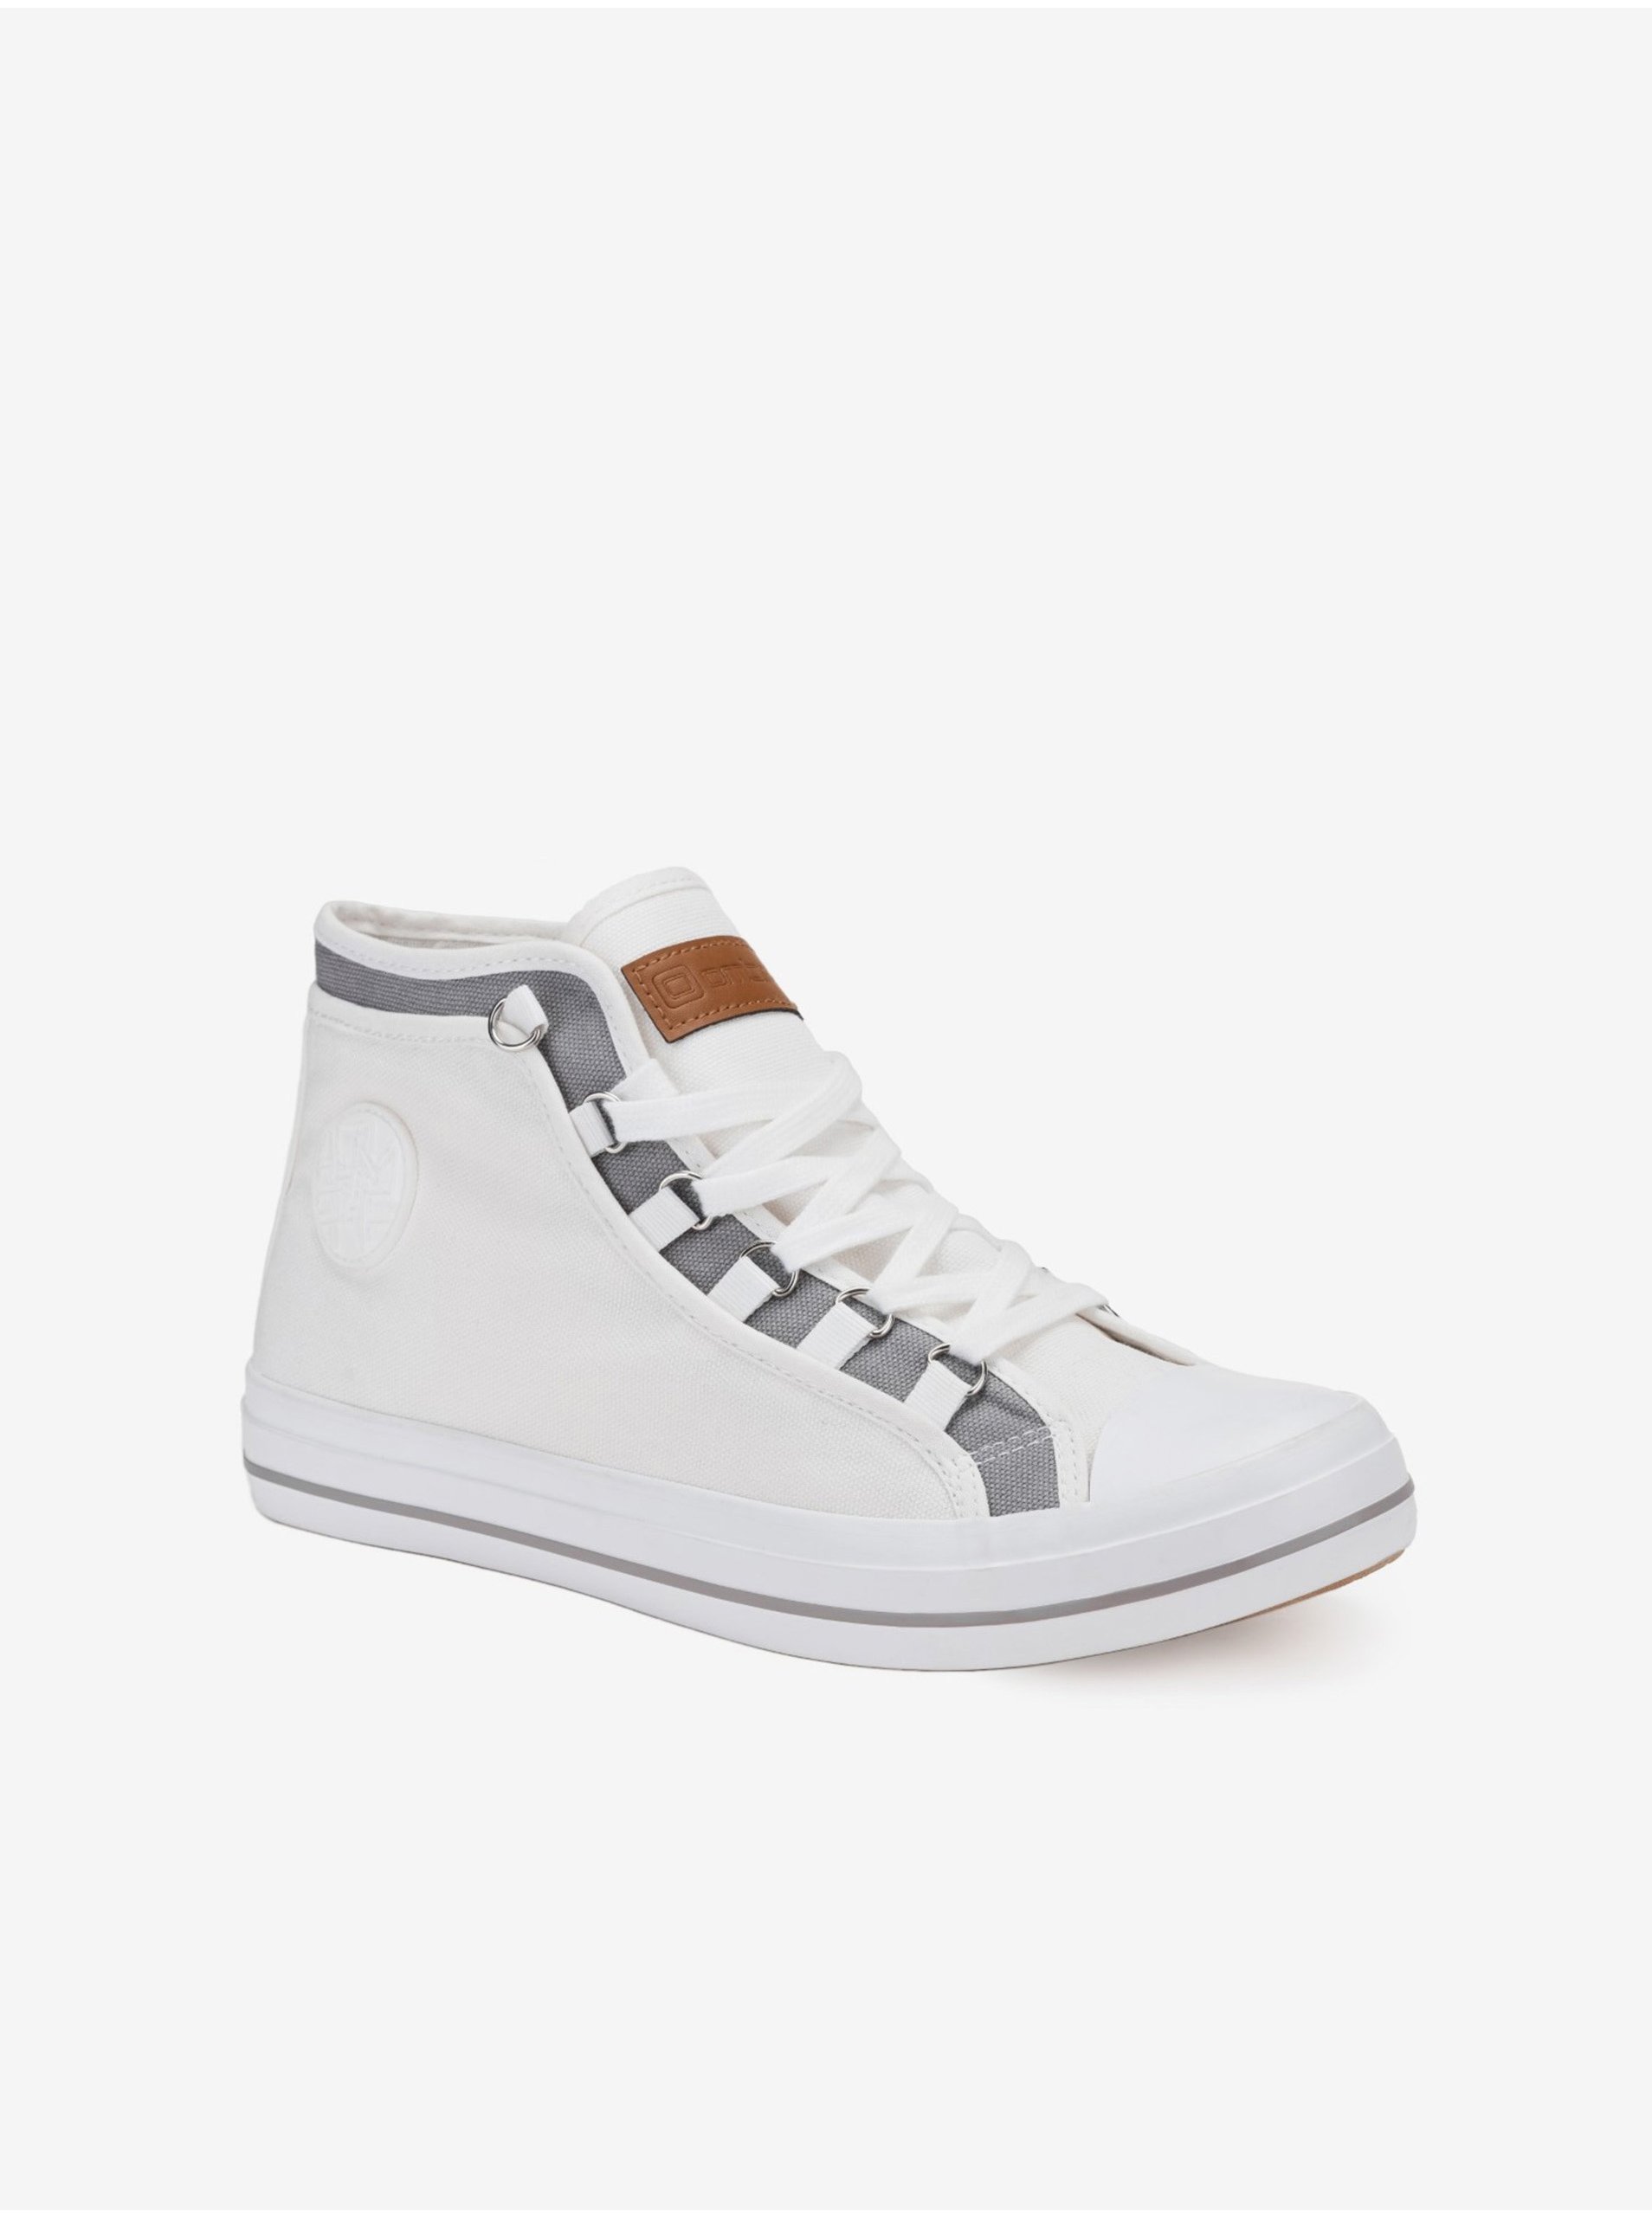 E-shop Bílé pánské sneakers boty Ombre Clothing T375